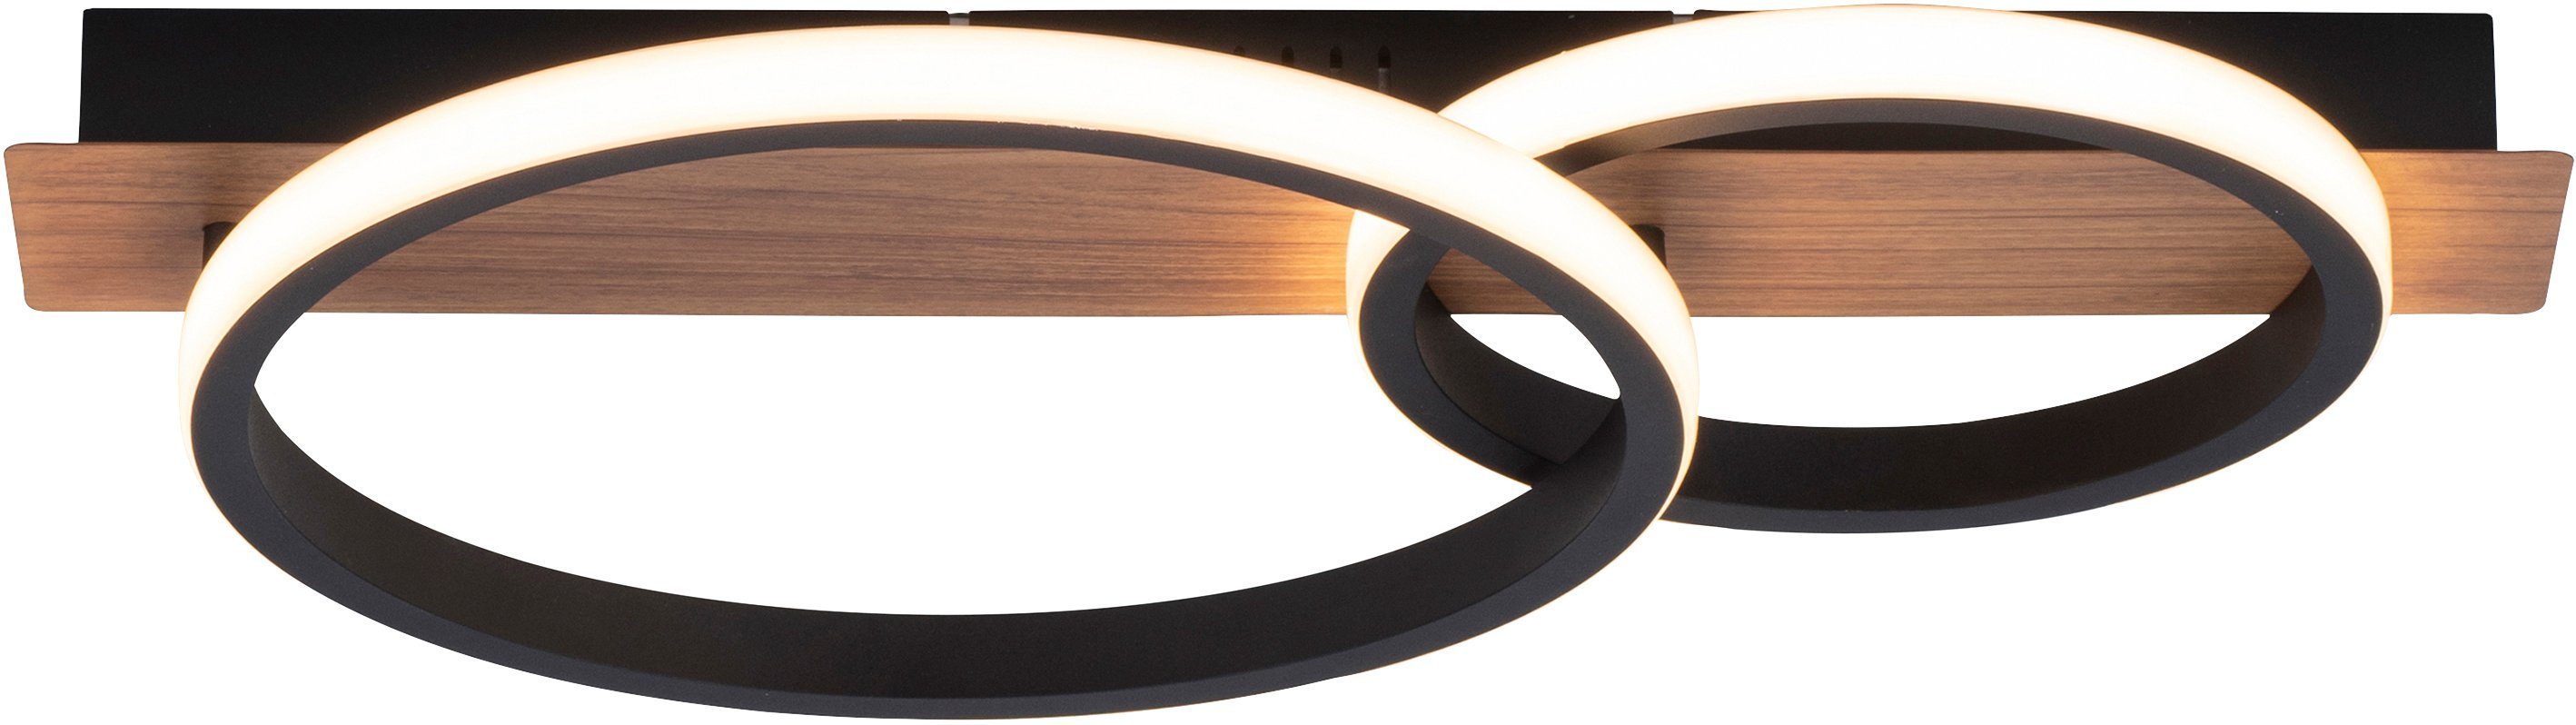 Home affaire LED LED integriert, Deckenlampe Licht, warmweißes Dekor Deckenleuchte fest Holz Molay, Warmweiß